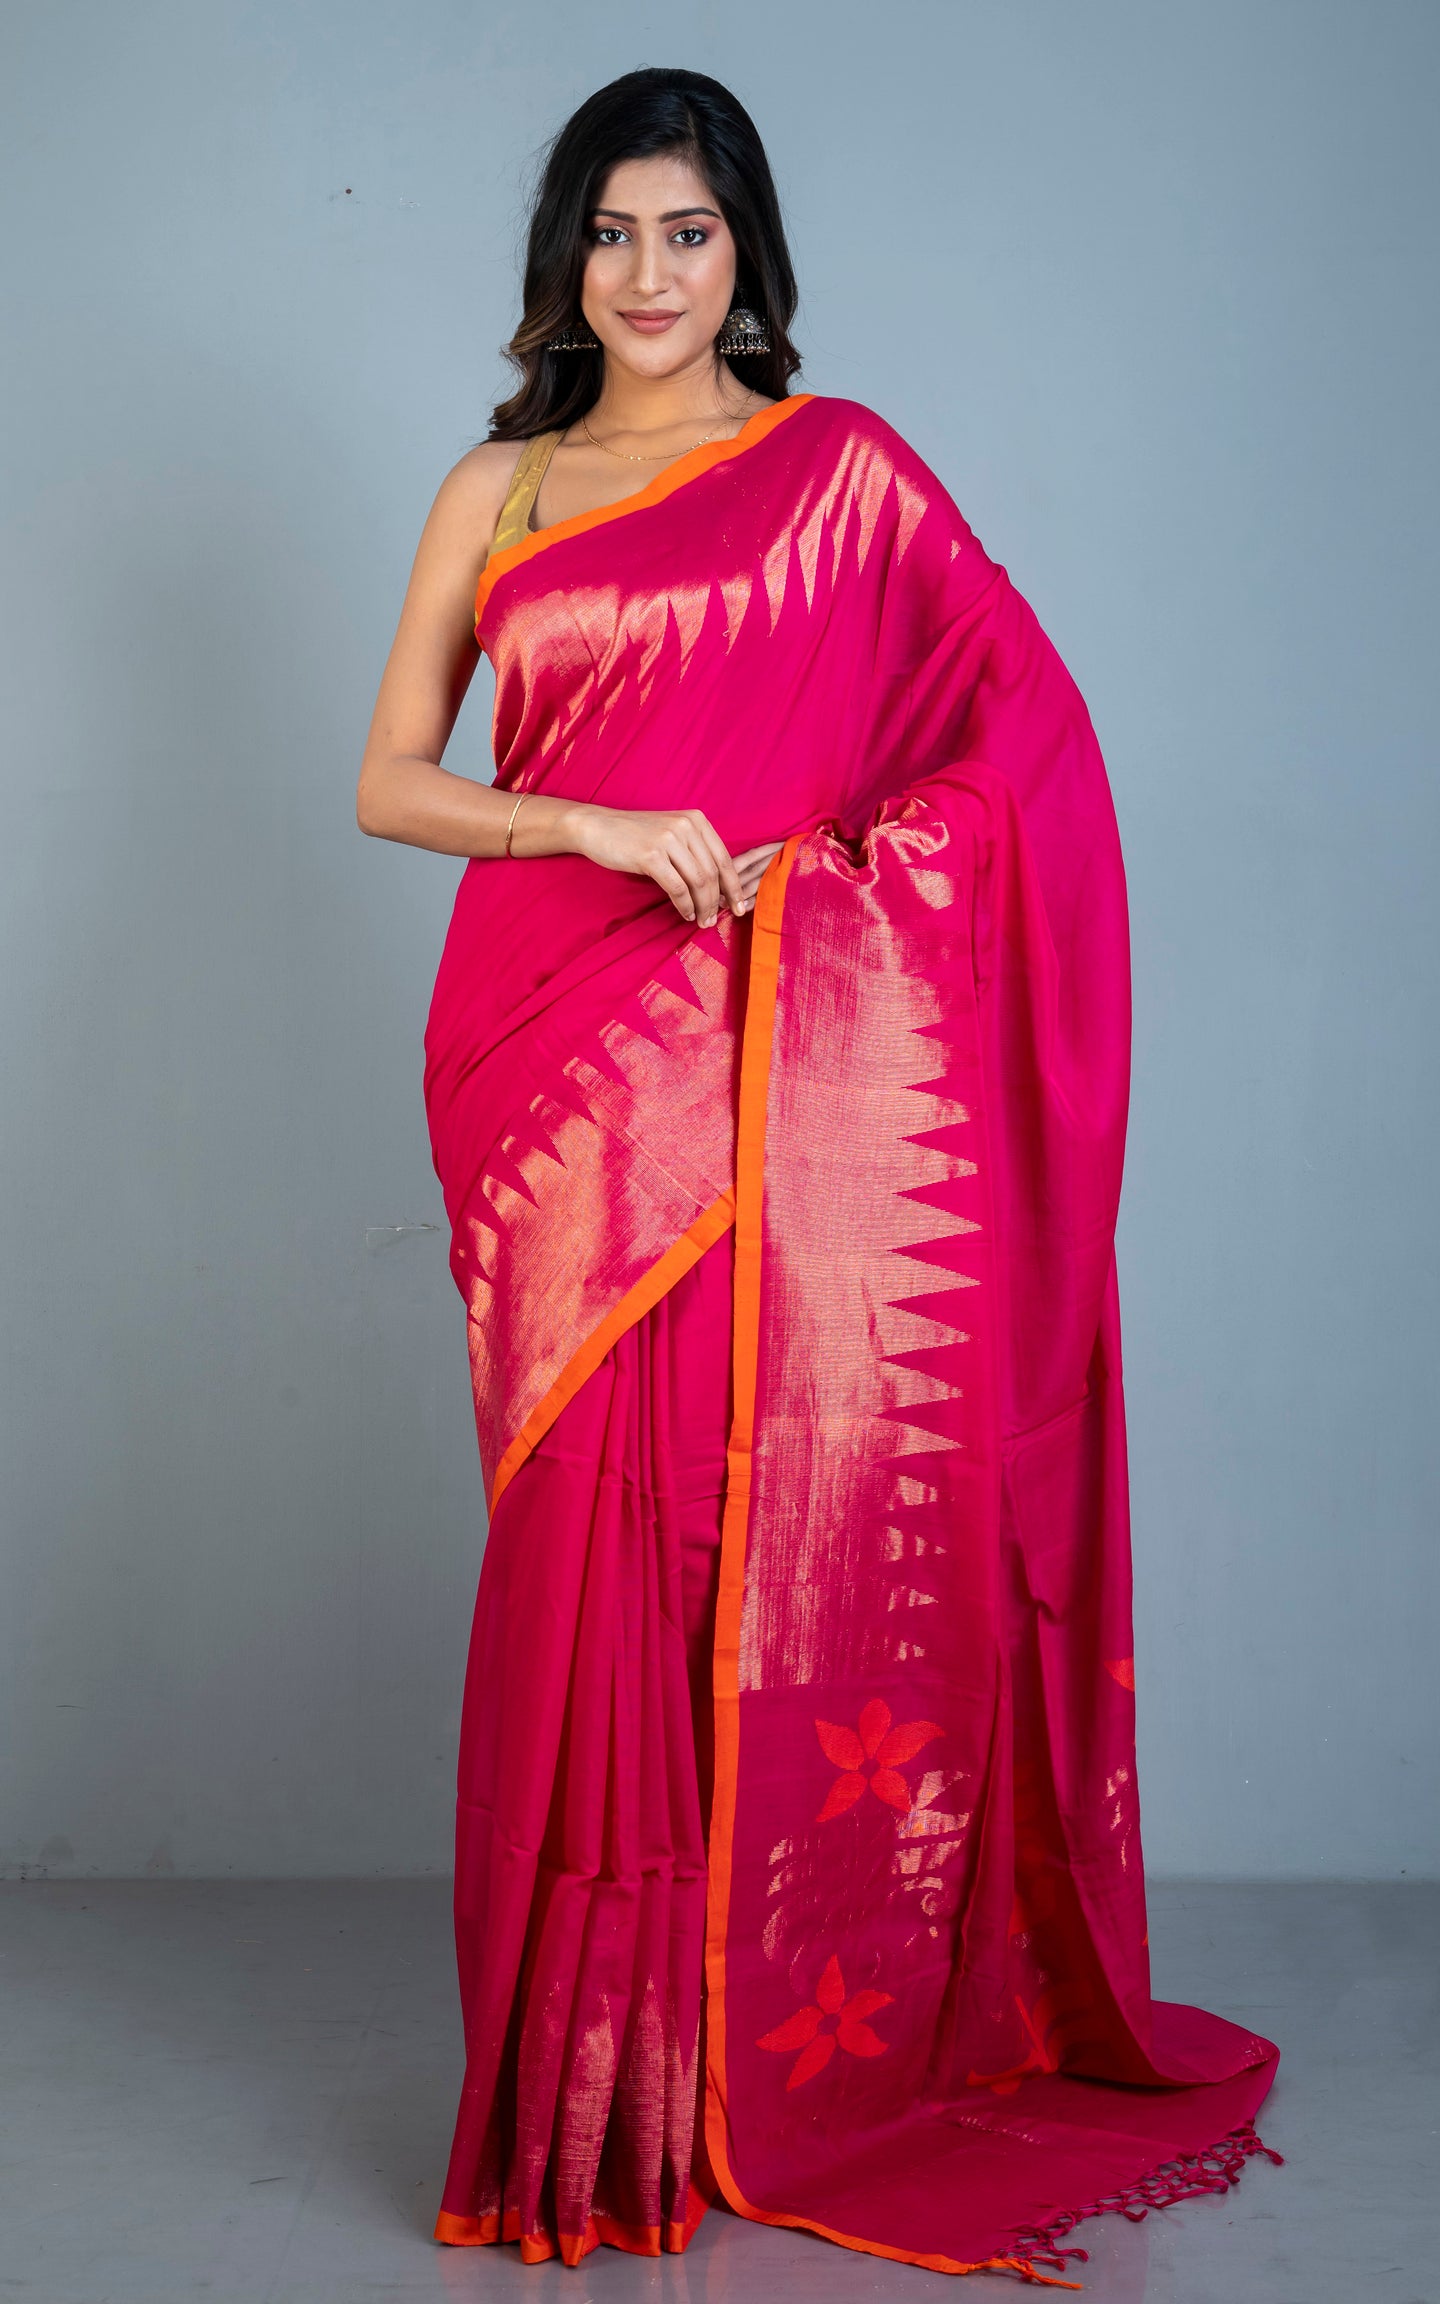 Premium Quality Double Warp Soft Cotton Kanjivaram Saree in Hot Pink, Red Orange and Muted Gold Zari Work